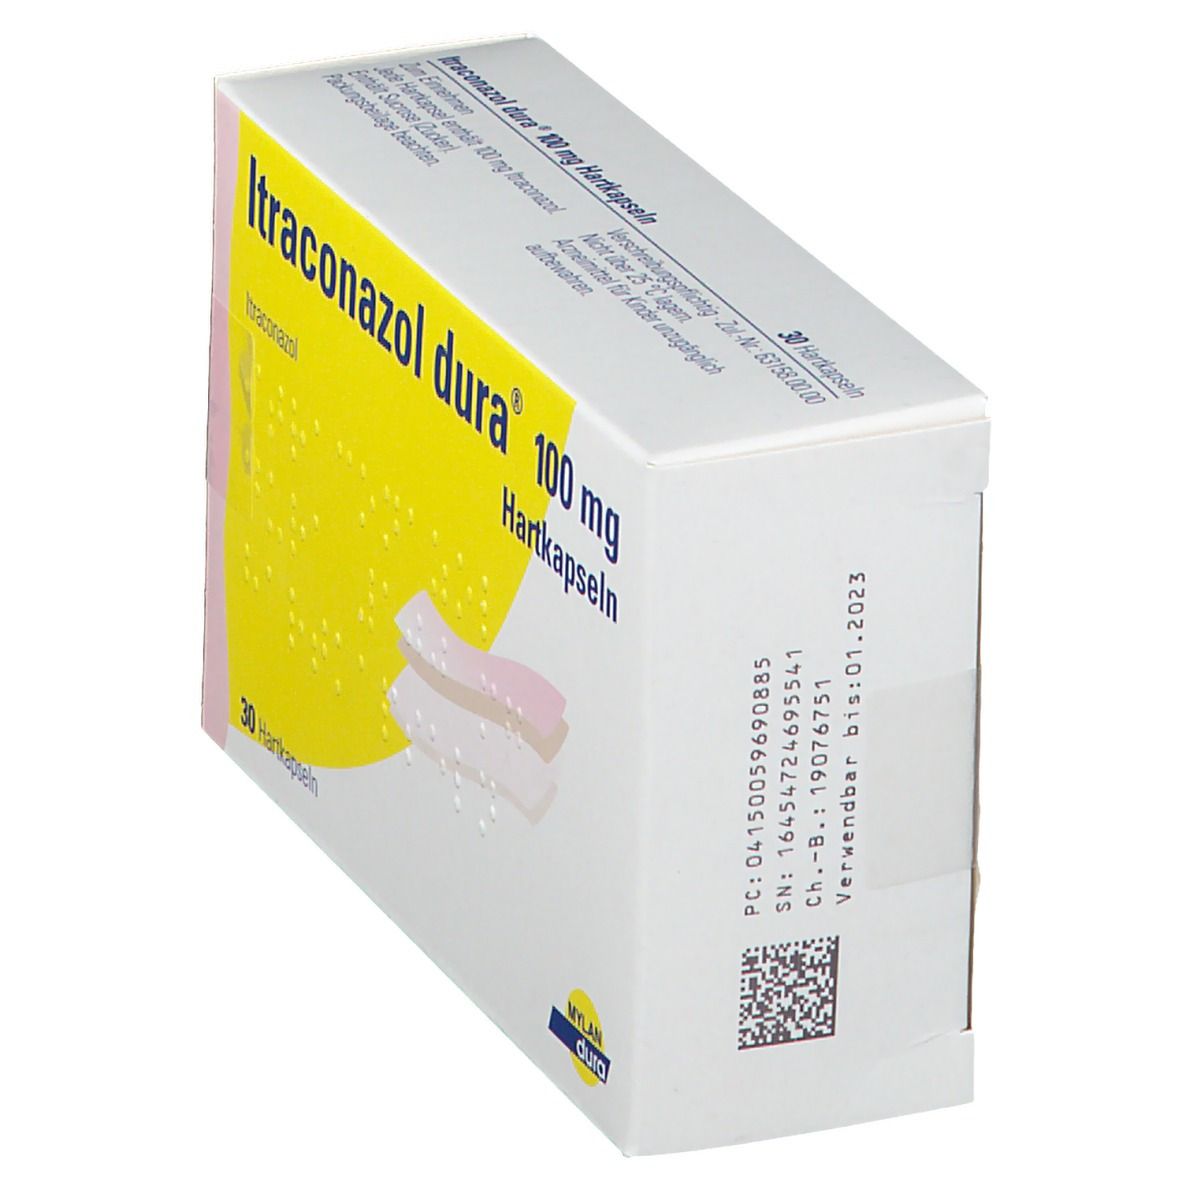 Itraconazol dura® 100 mg